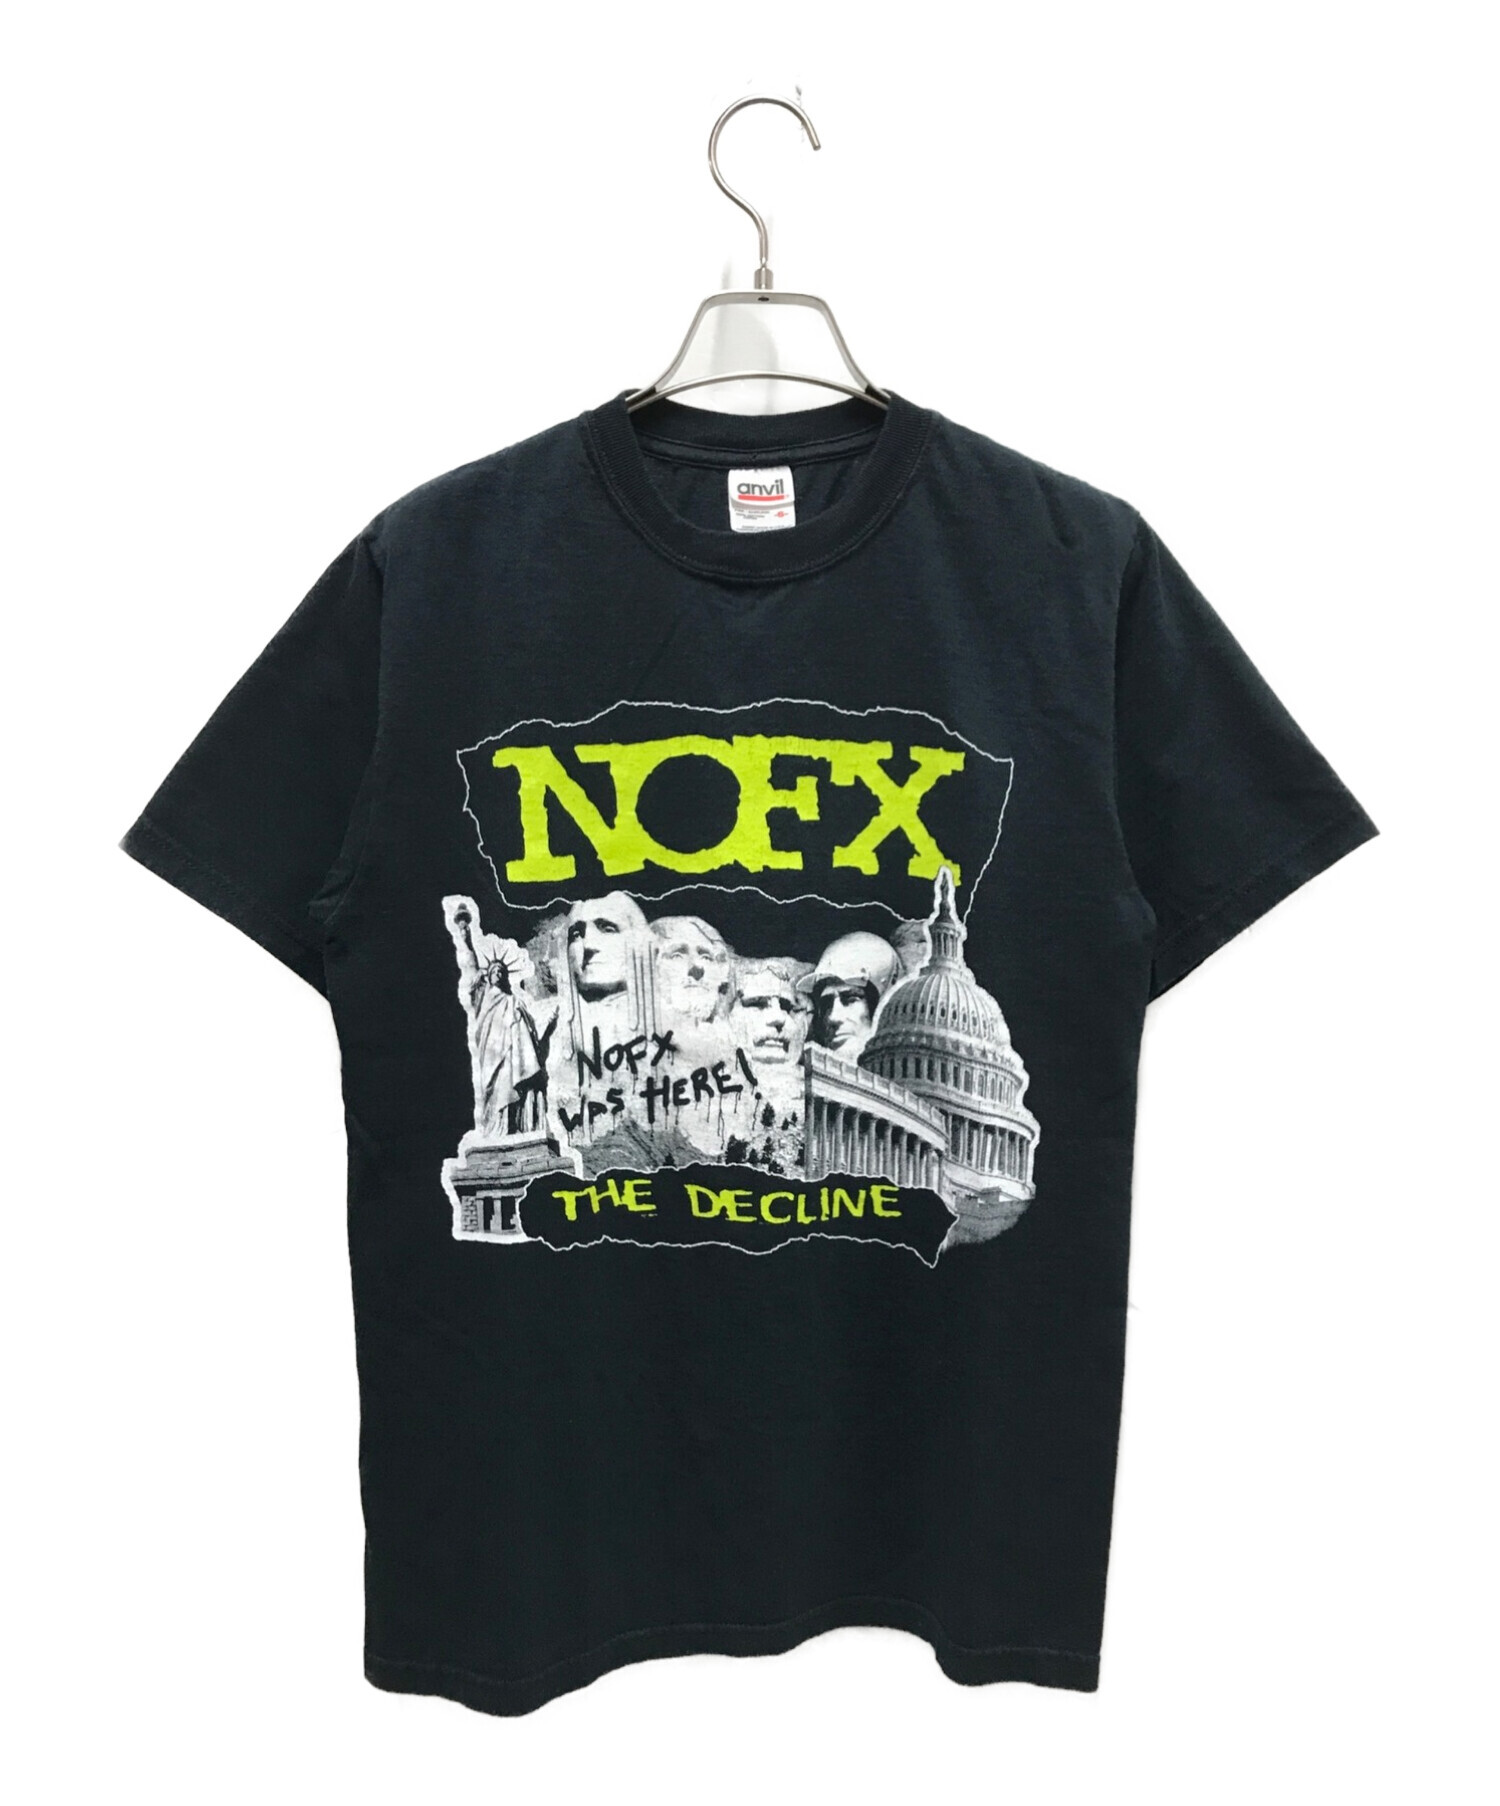 メタリカ90's ユニオン13 UNION13 バンド Tシャツ NOFX 黒